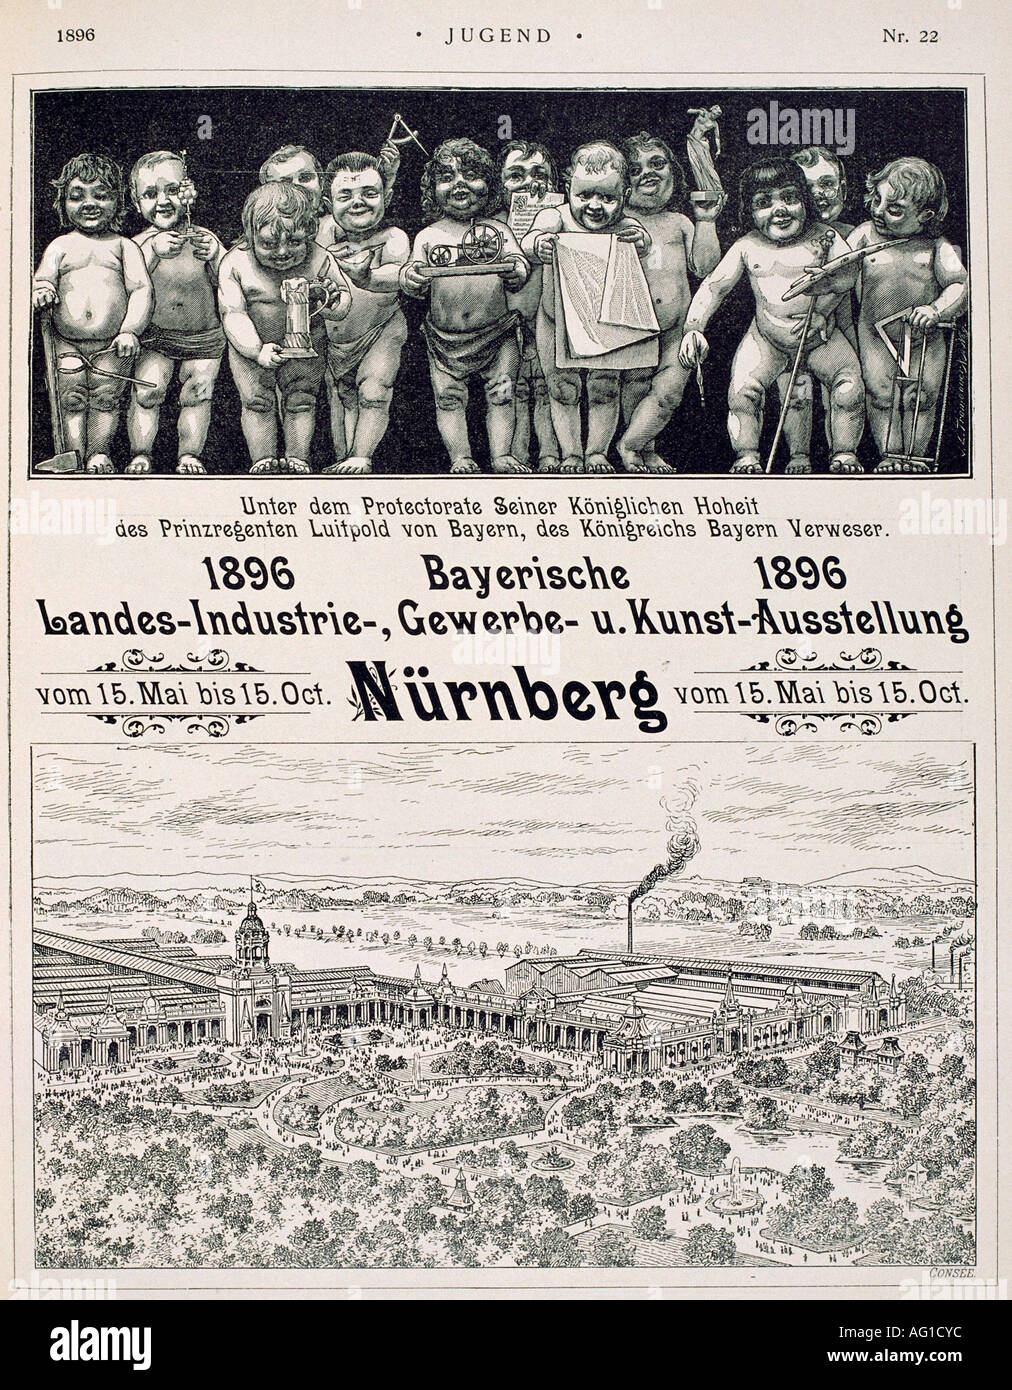 advertising, exhibitions, Bayerische Landes Industrie - Gewerbe - und Kunst - Ausstellung, Nuremberg, 15.5.1896 - 15.10.1896, advertisement, 'Jugend', , Stock Photo